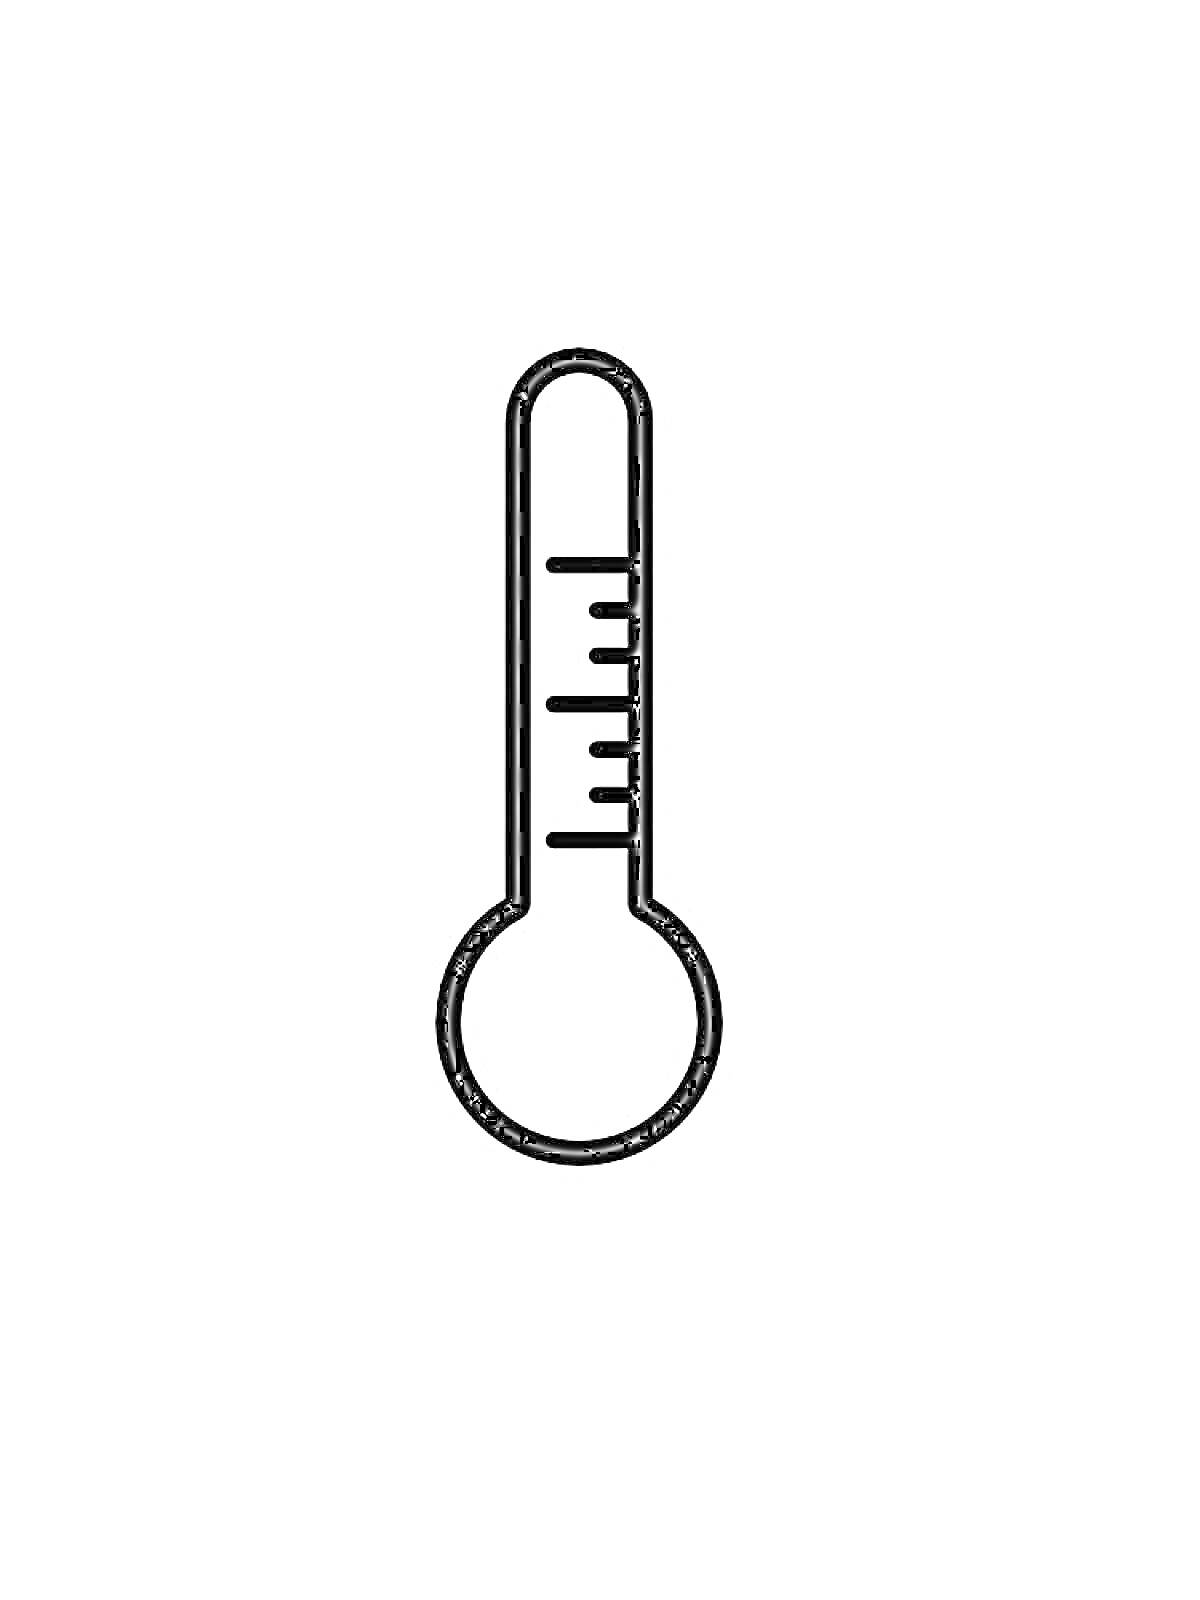 Градусник с делениями для измерения температуры